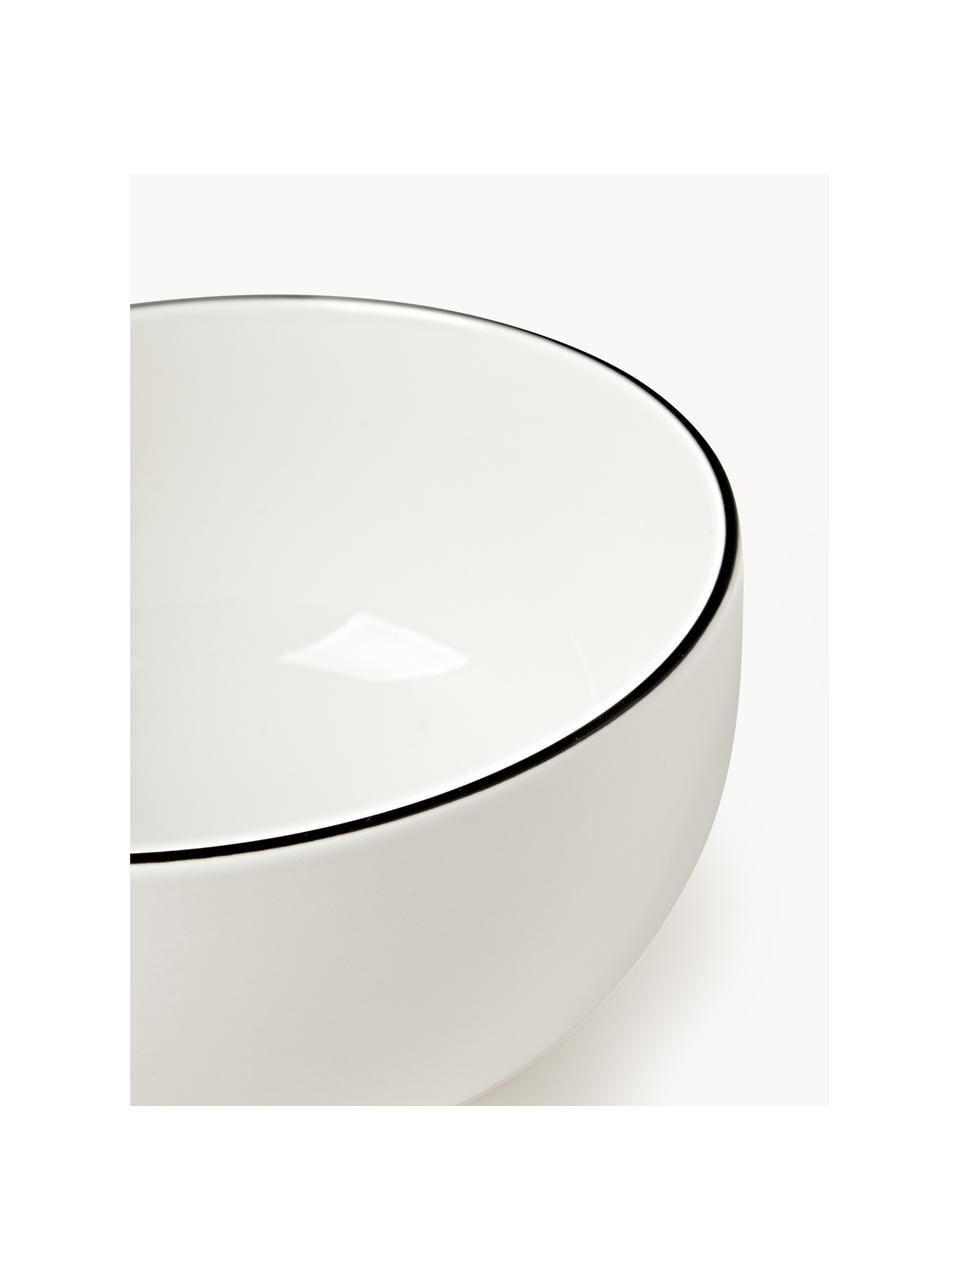 Porcelánové misky Facile, 2 ks, Vysoce kvalitní tvrdý porcelán (cca 50 % kaolinu, 25 % křemene a 25 % živce), Tlumeně bílá, Ø 16 cm, V 8 cm